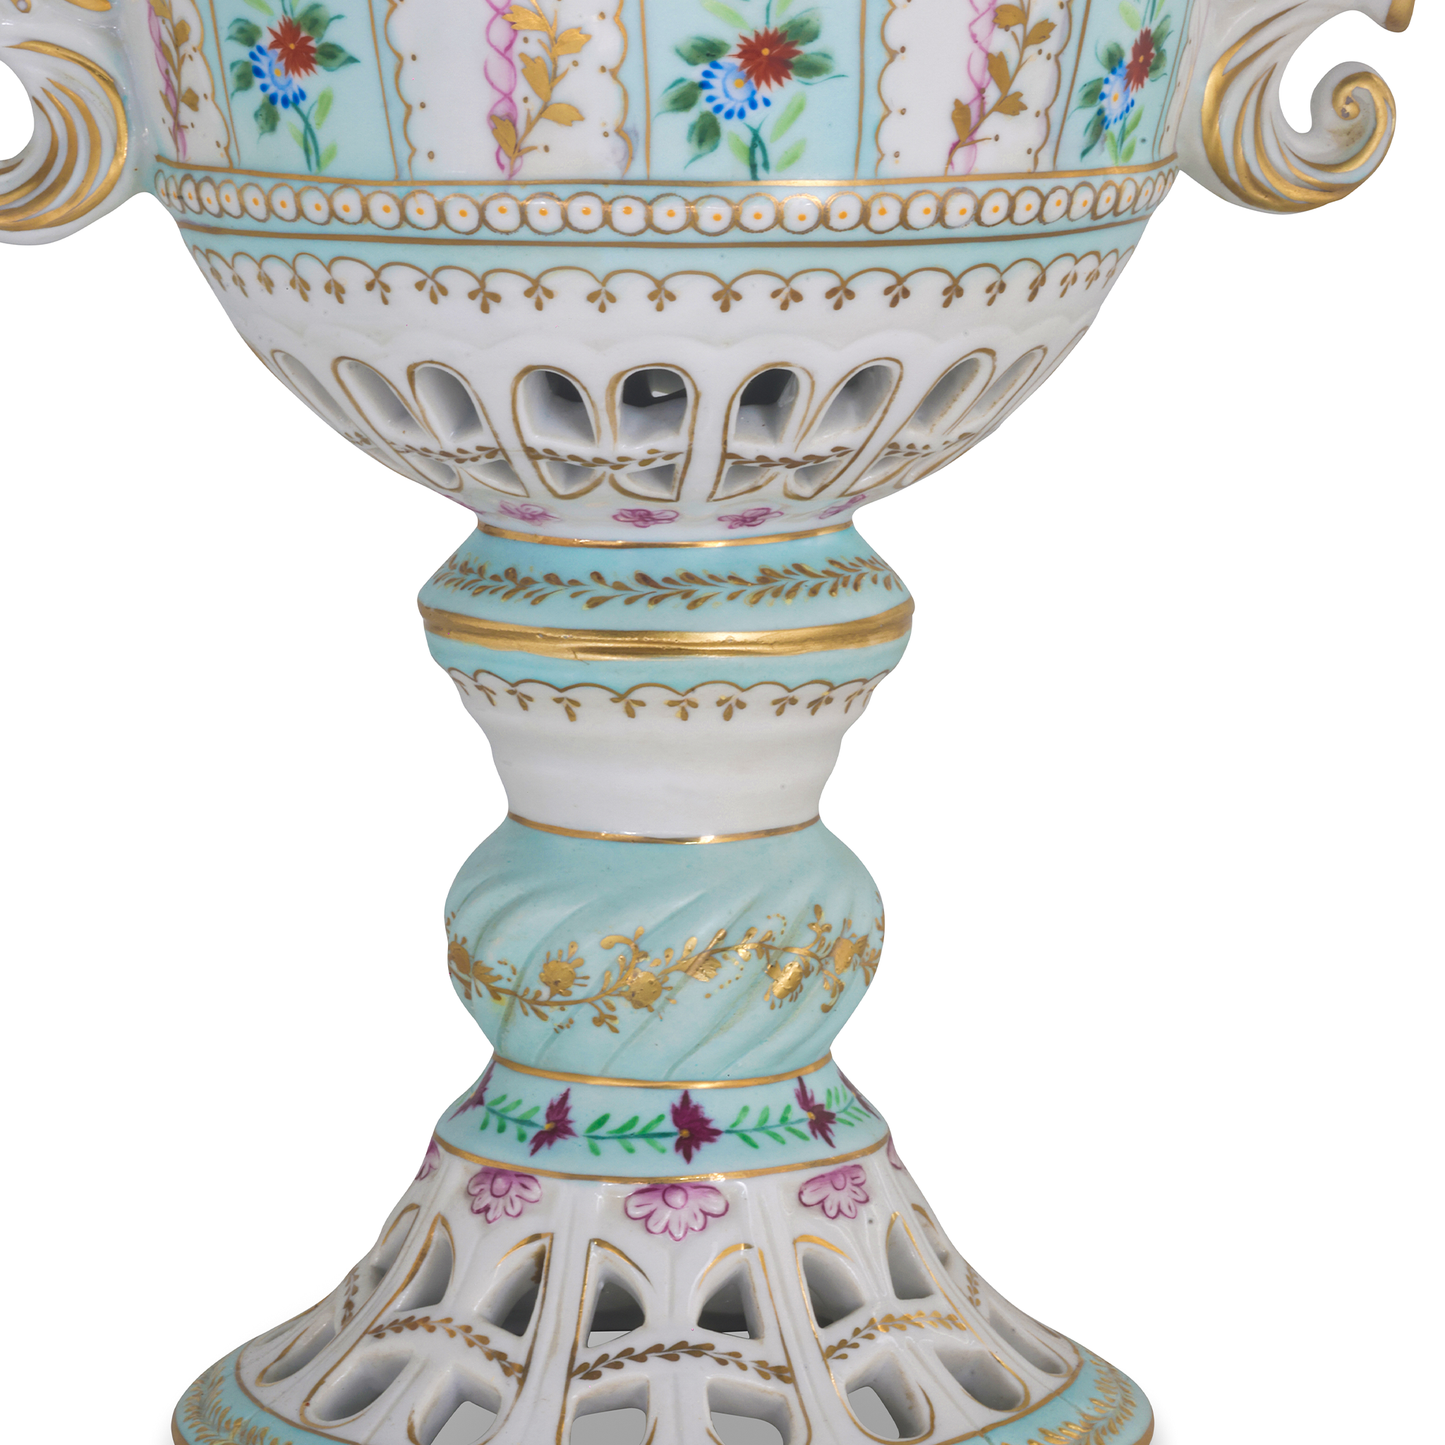 Hand-painted Potpourri Porcelain Jar